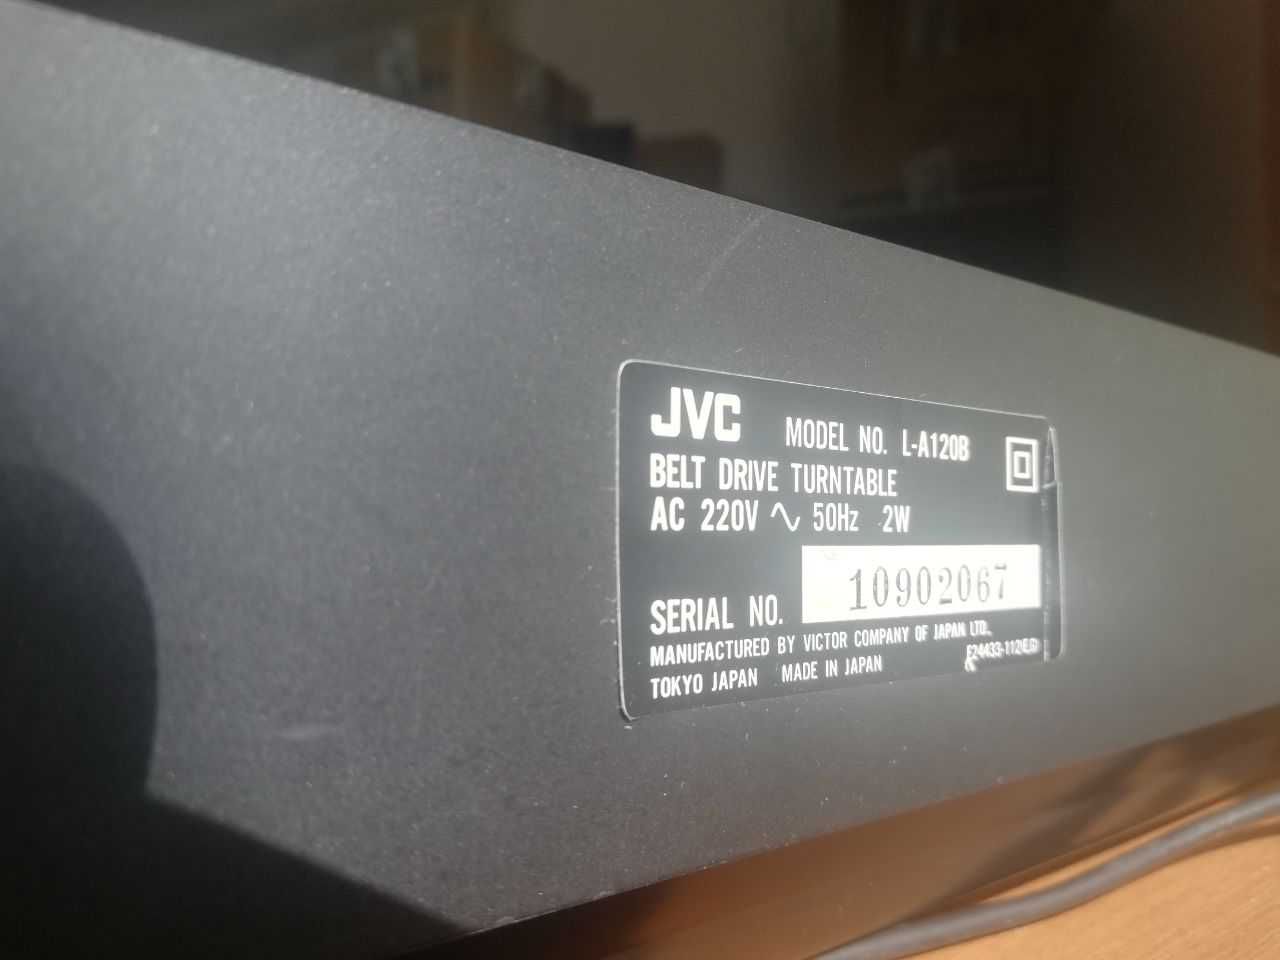 Gramofon automatyczny JVC model L-A120B